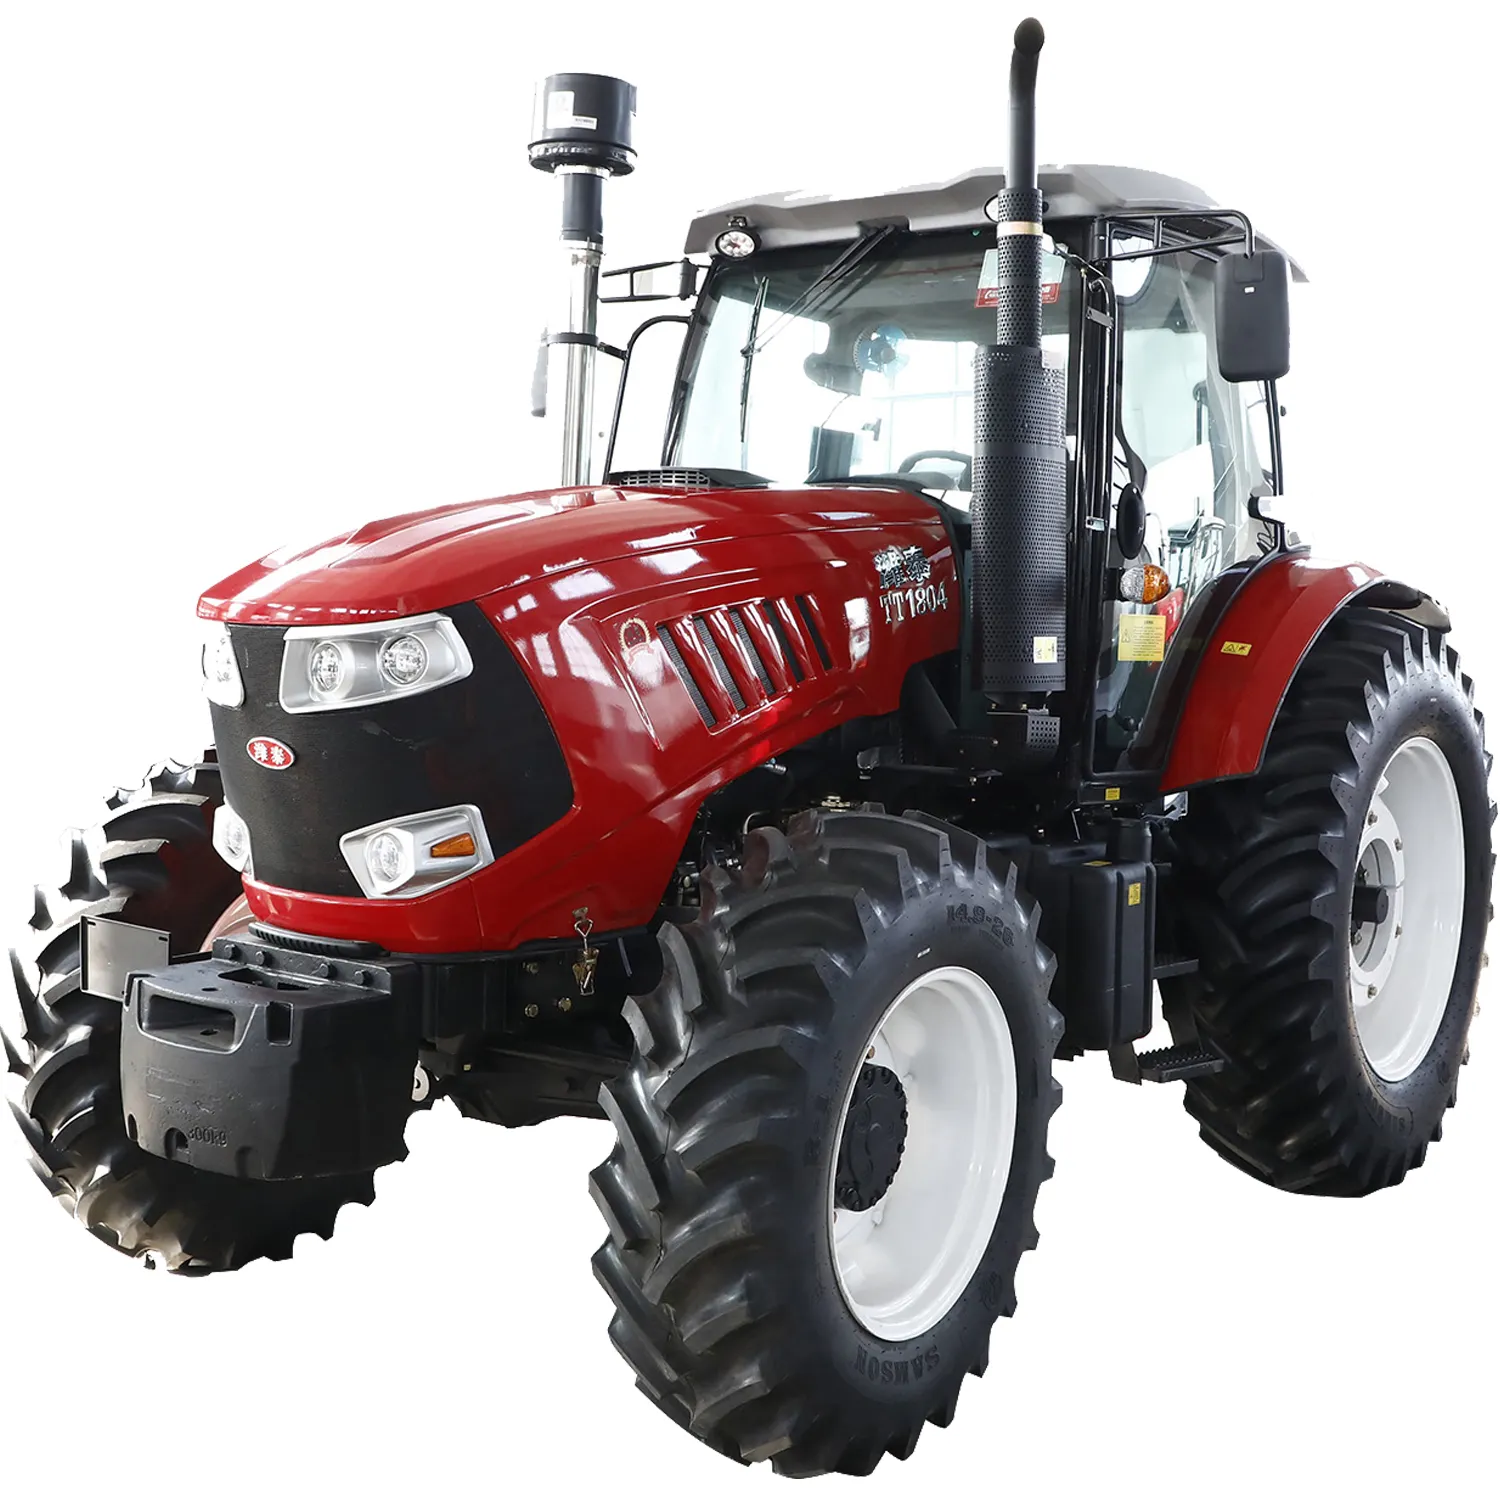 Kleine Landwirtschaft Traktor Günstige Mini Garten Landwirtschaft Traktoren gebrauchte Lader Bagger Preis zum Verkauf China Traktor 4x4 4WD Kabine